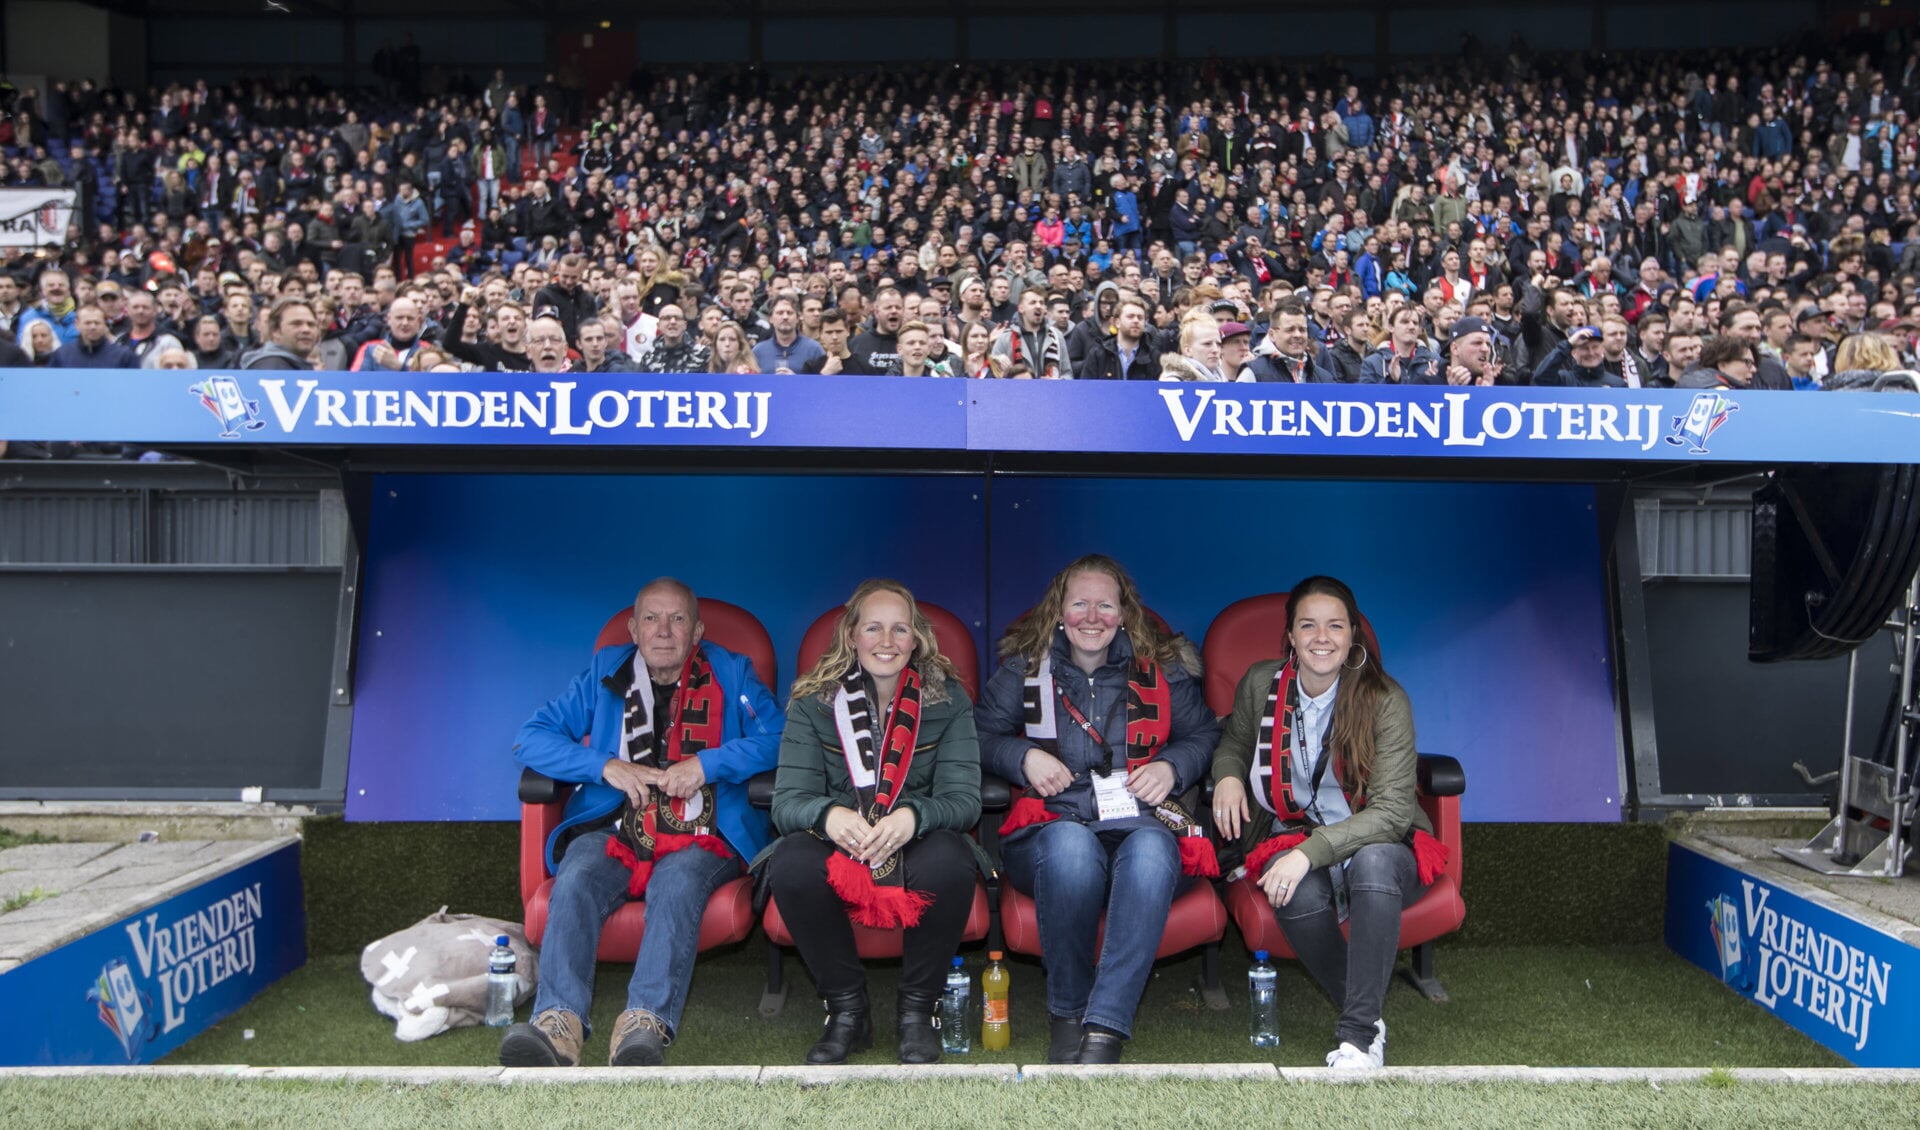 Natascha de Graaf uit Pijnacker won in de VriendenLoterij een plaats in een unieke VIP dug-out tijdens de wedstrijd Feyenoord- FC Utrecht in De Kuip in Rotterdam.  (foto: Pro Shots)